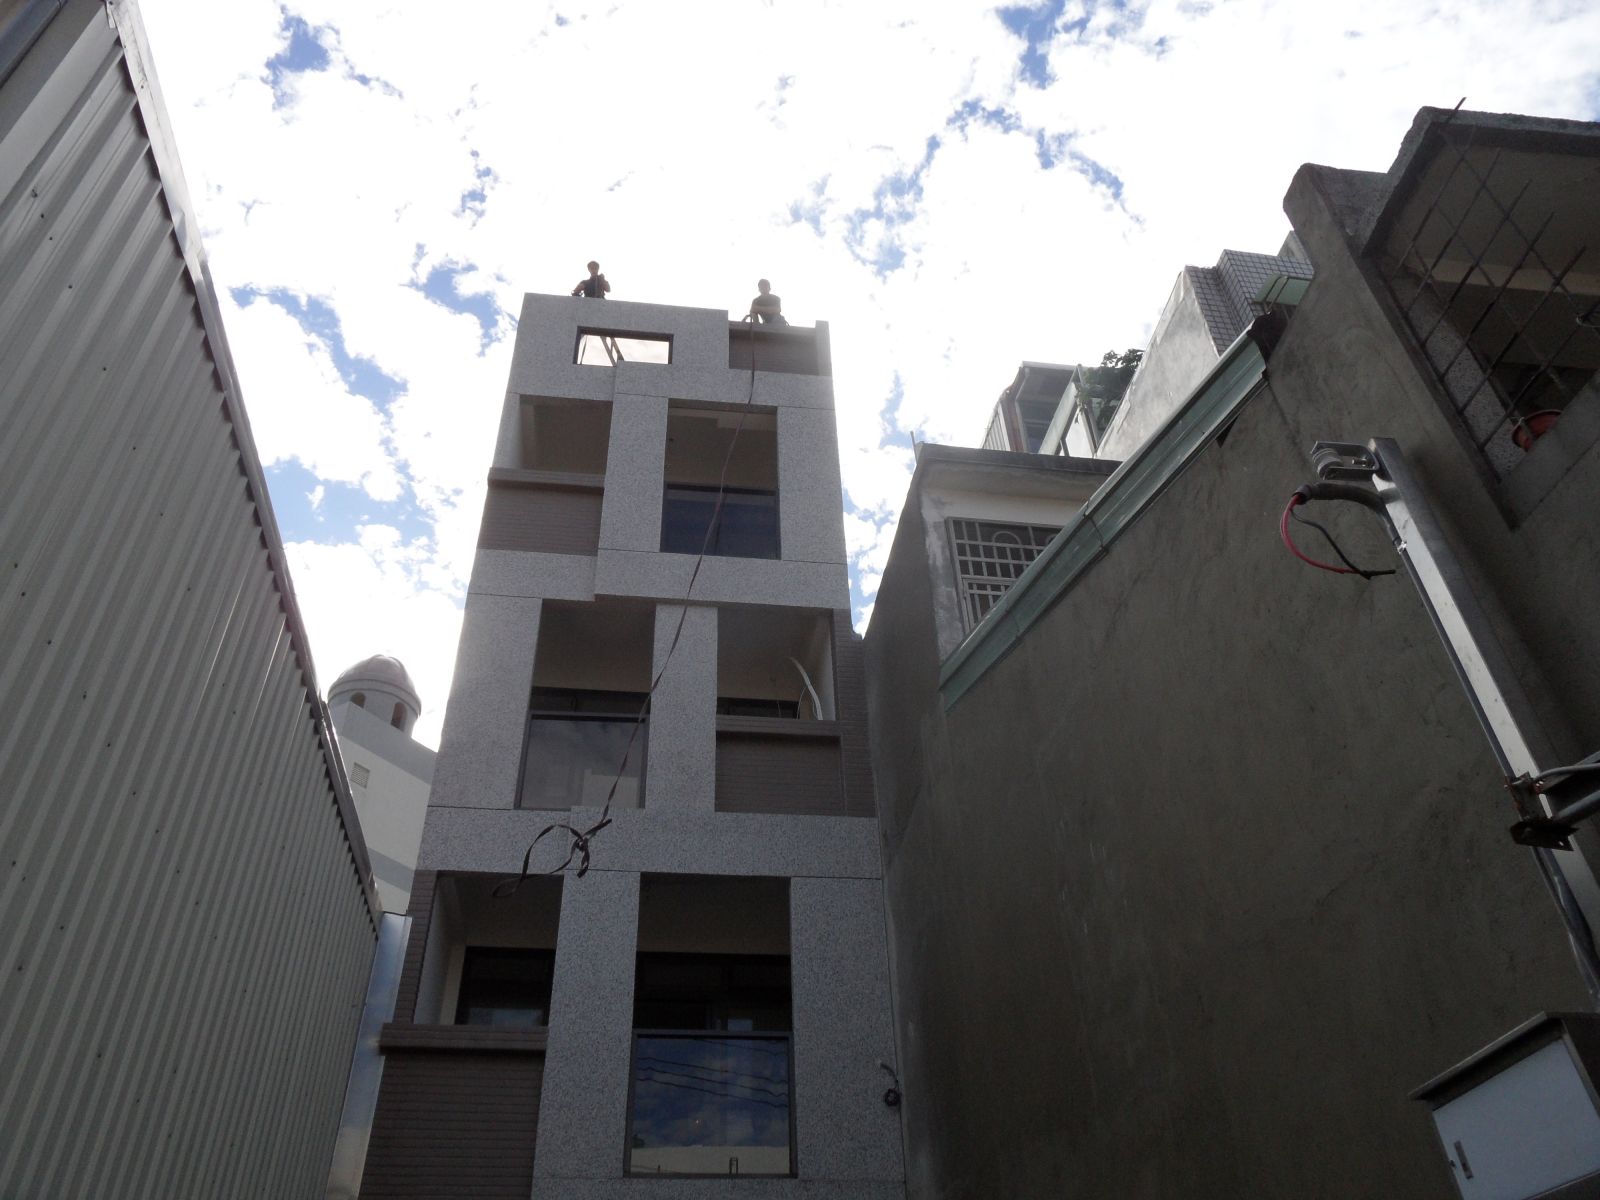 本工程位於頂樓,由於吊車無法進入採用傳統方式(人力)